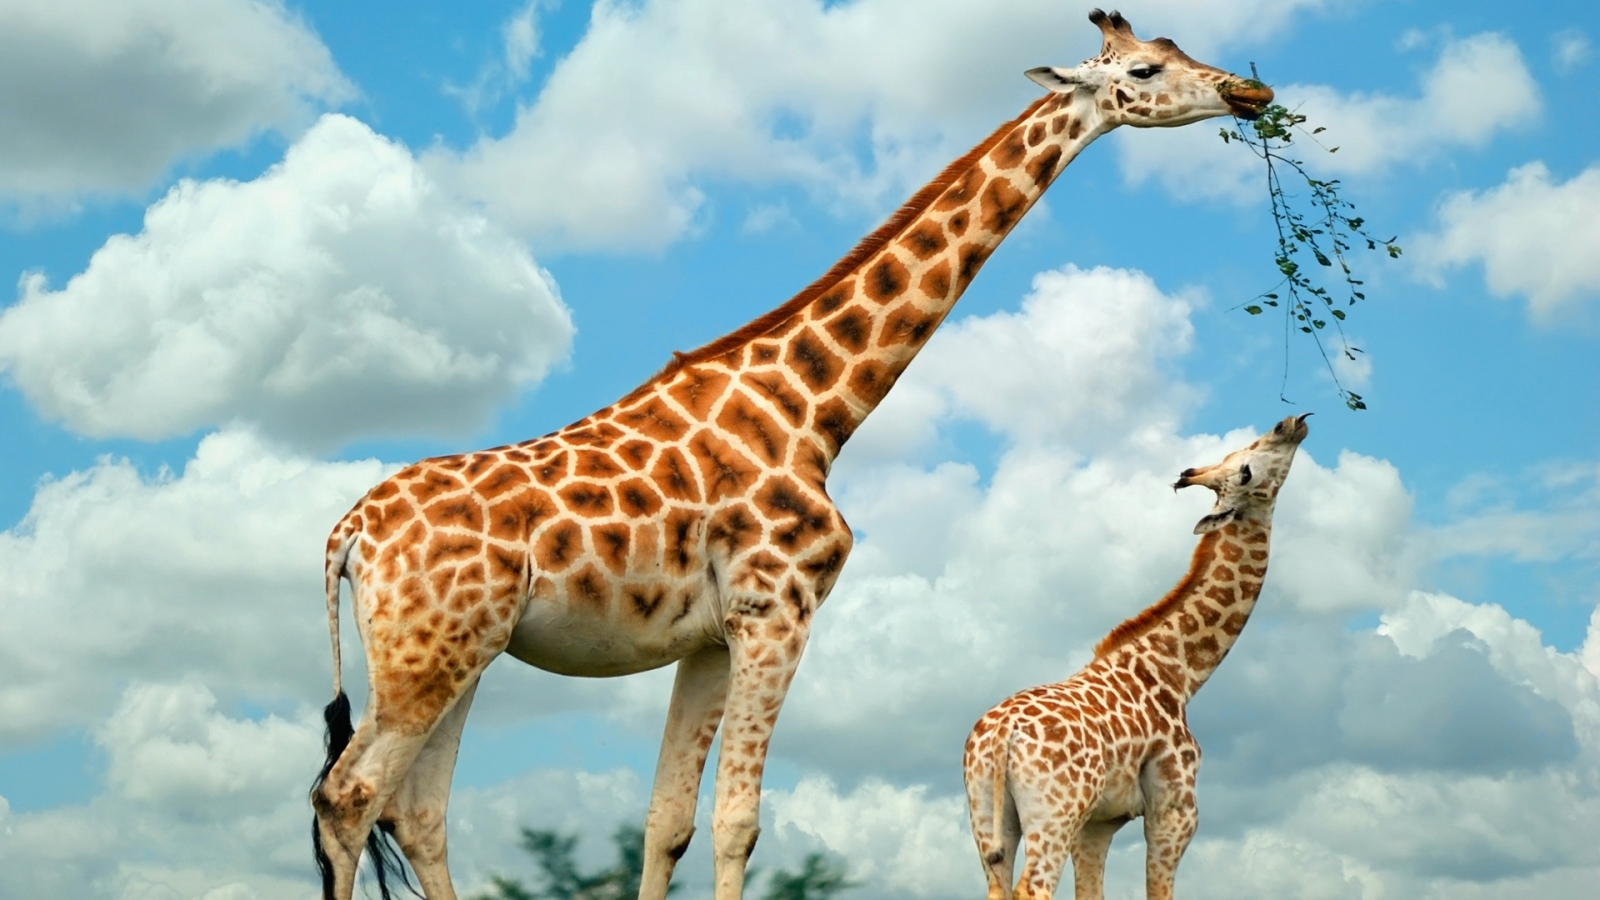 Happy Giraffe Family for 1600 x 900 HDTV resolution